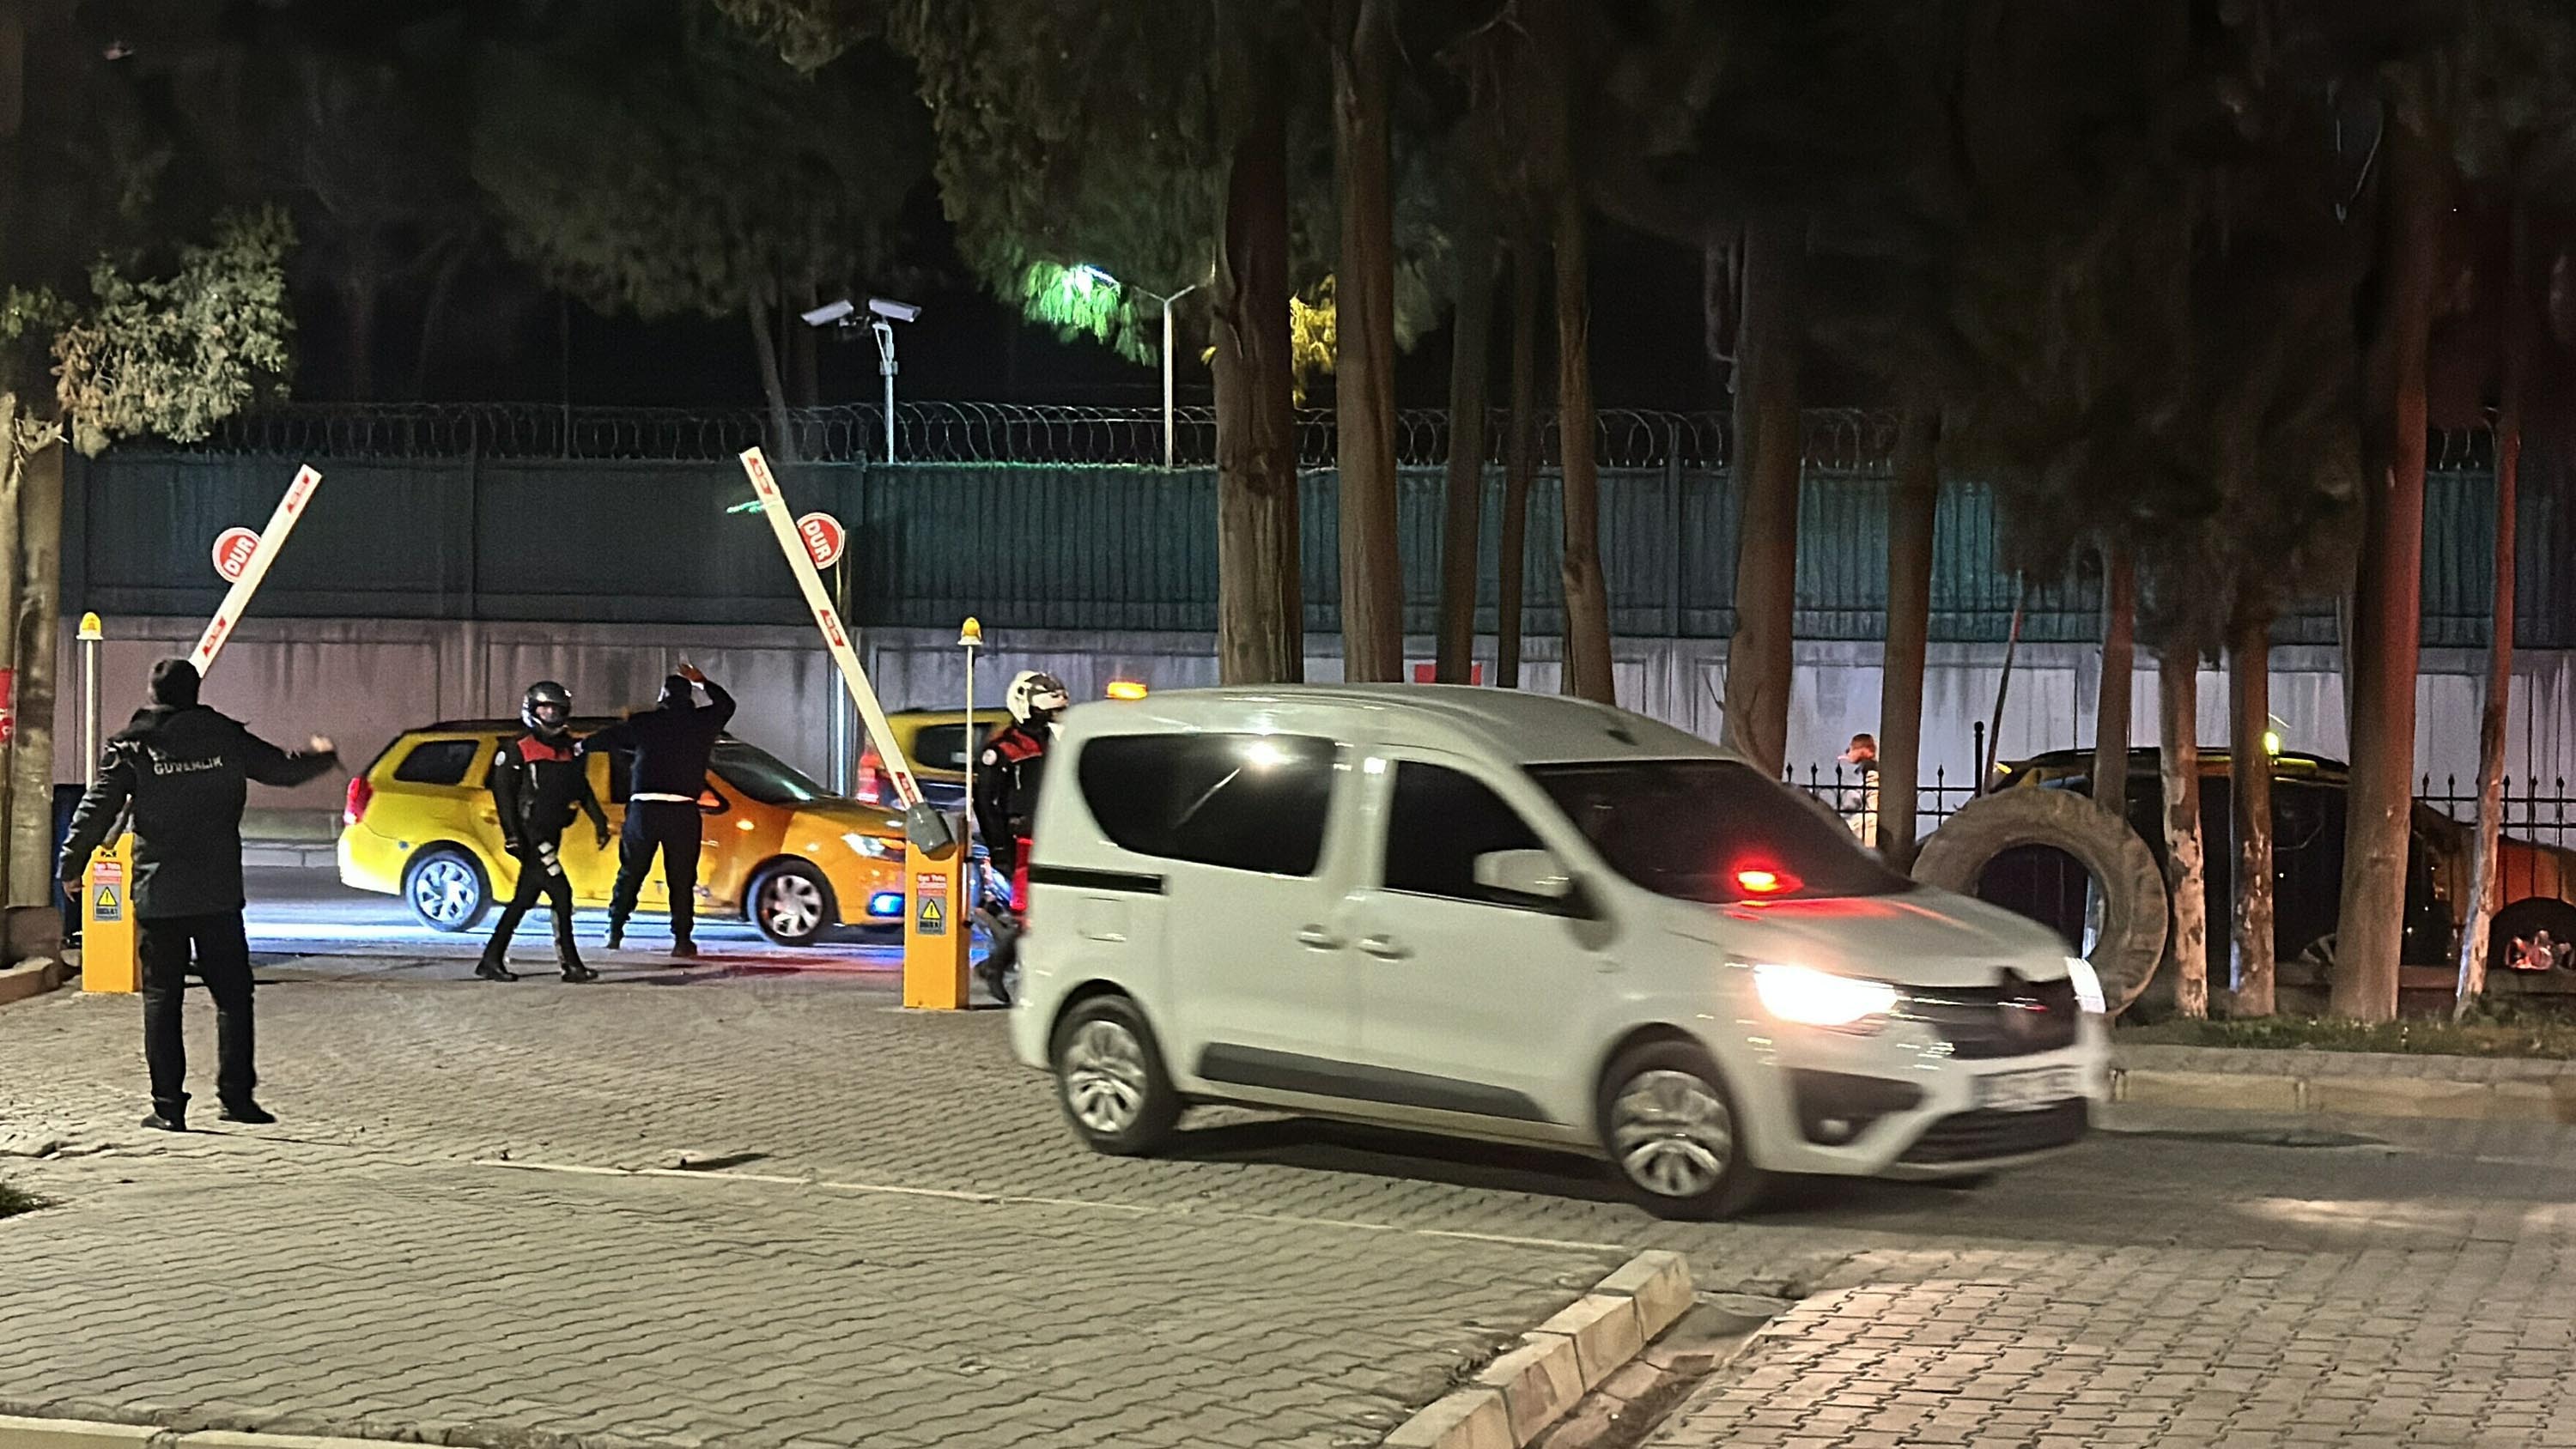 İstanbul dün gece uyumadı... Taksicilerden 250 araçlık 'Oğuz Erge' konvoyu: Cenazesini Adli Tıp'a alkışlarla getirdiler